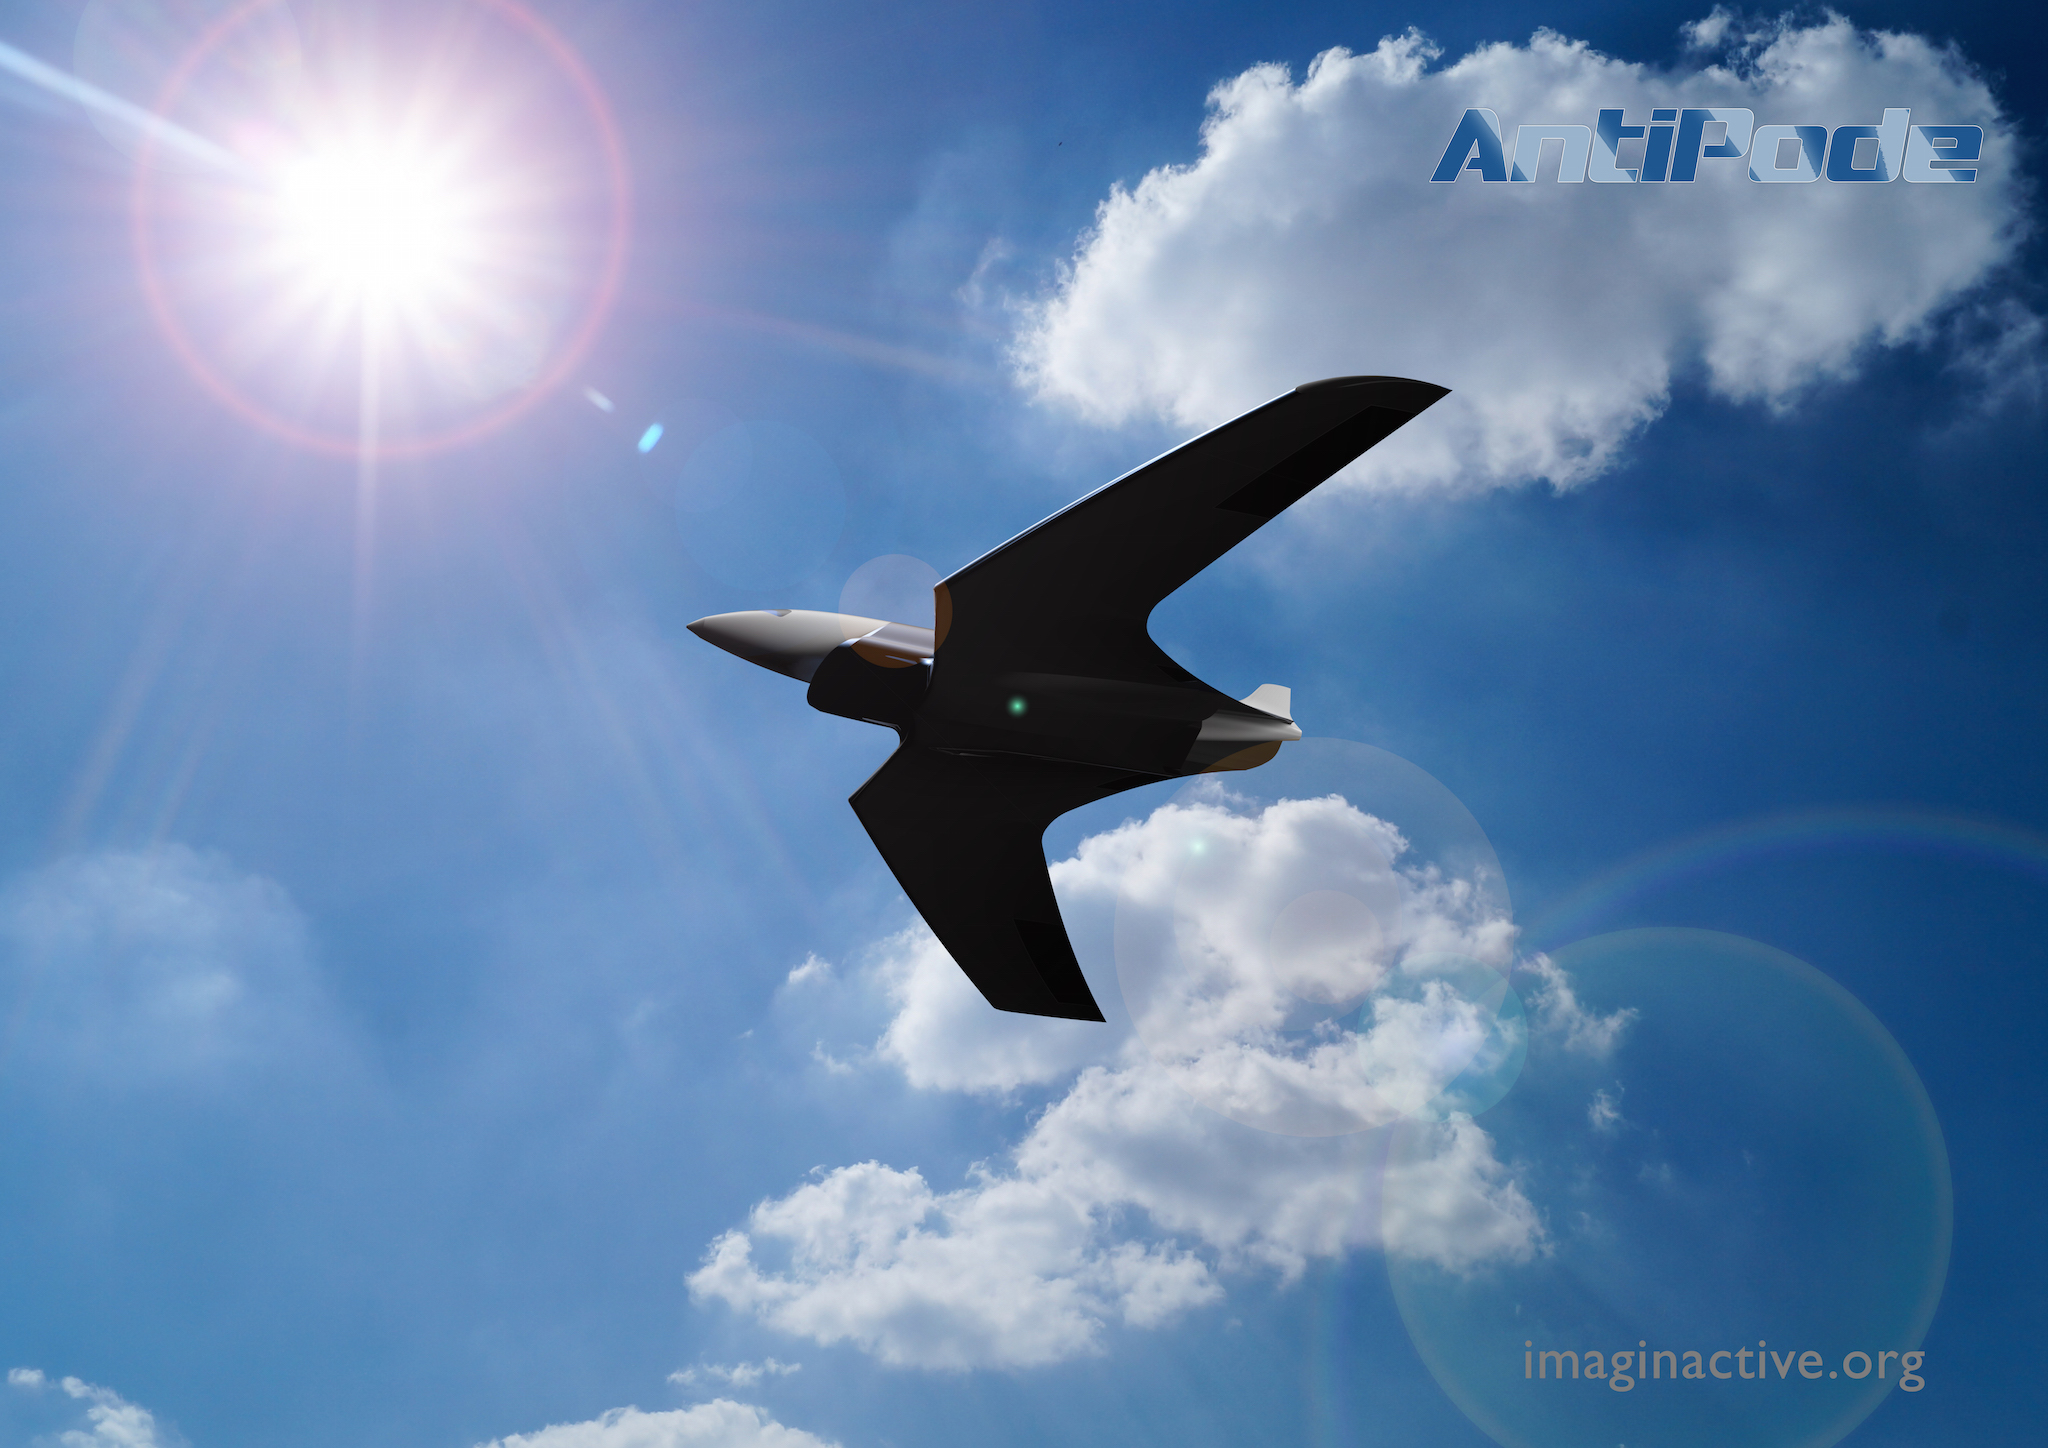 L'Antipode est un concept d'avion hypersonique pas vraiment réaliste qui atteindrait Mach 24 (soit 24 fois la vitesse du son), du jamais vu pour un engin piloté. Son intérêt est surtout de poser les bonnes questions. © Abhishek Roy, Imaginactif